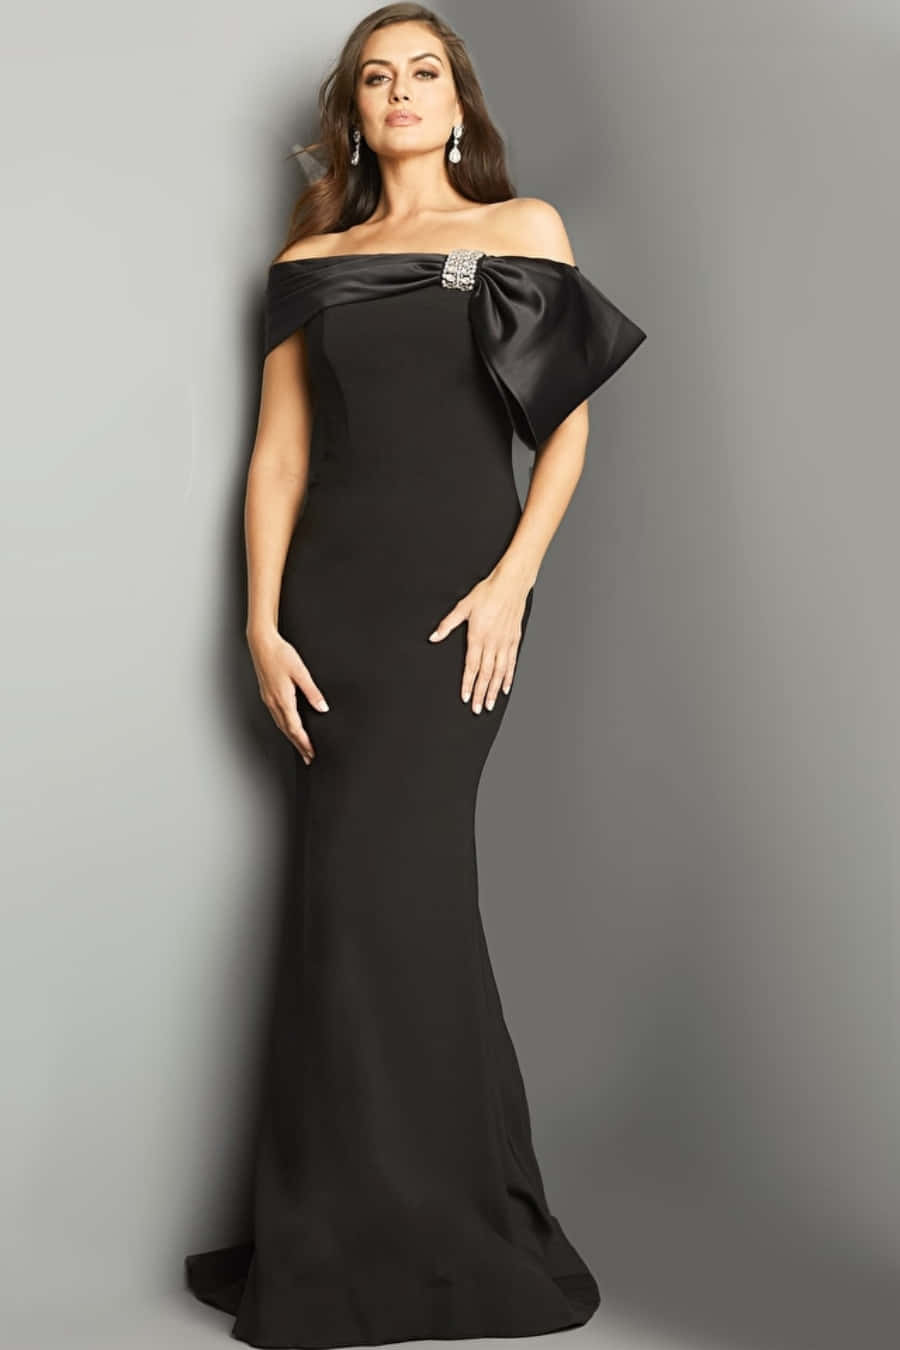 Róbateel Espectáculo Con Un Vestido De Etiqueta Negro Atemporalmente Elegante. Fondo de pantalla